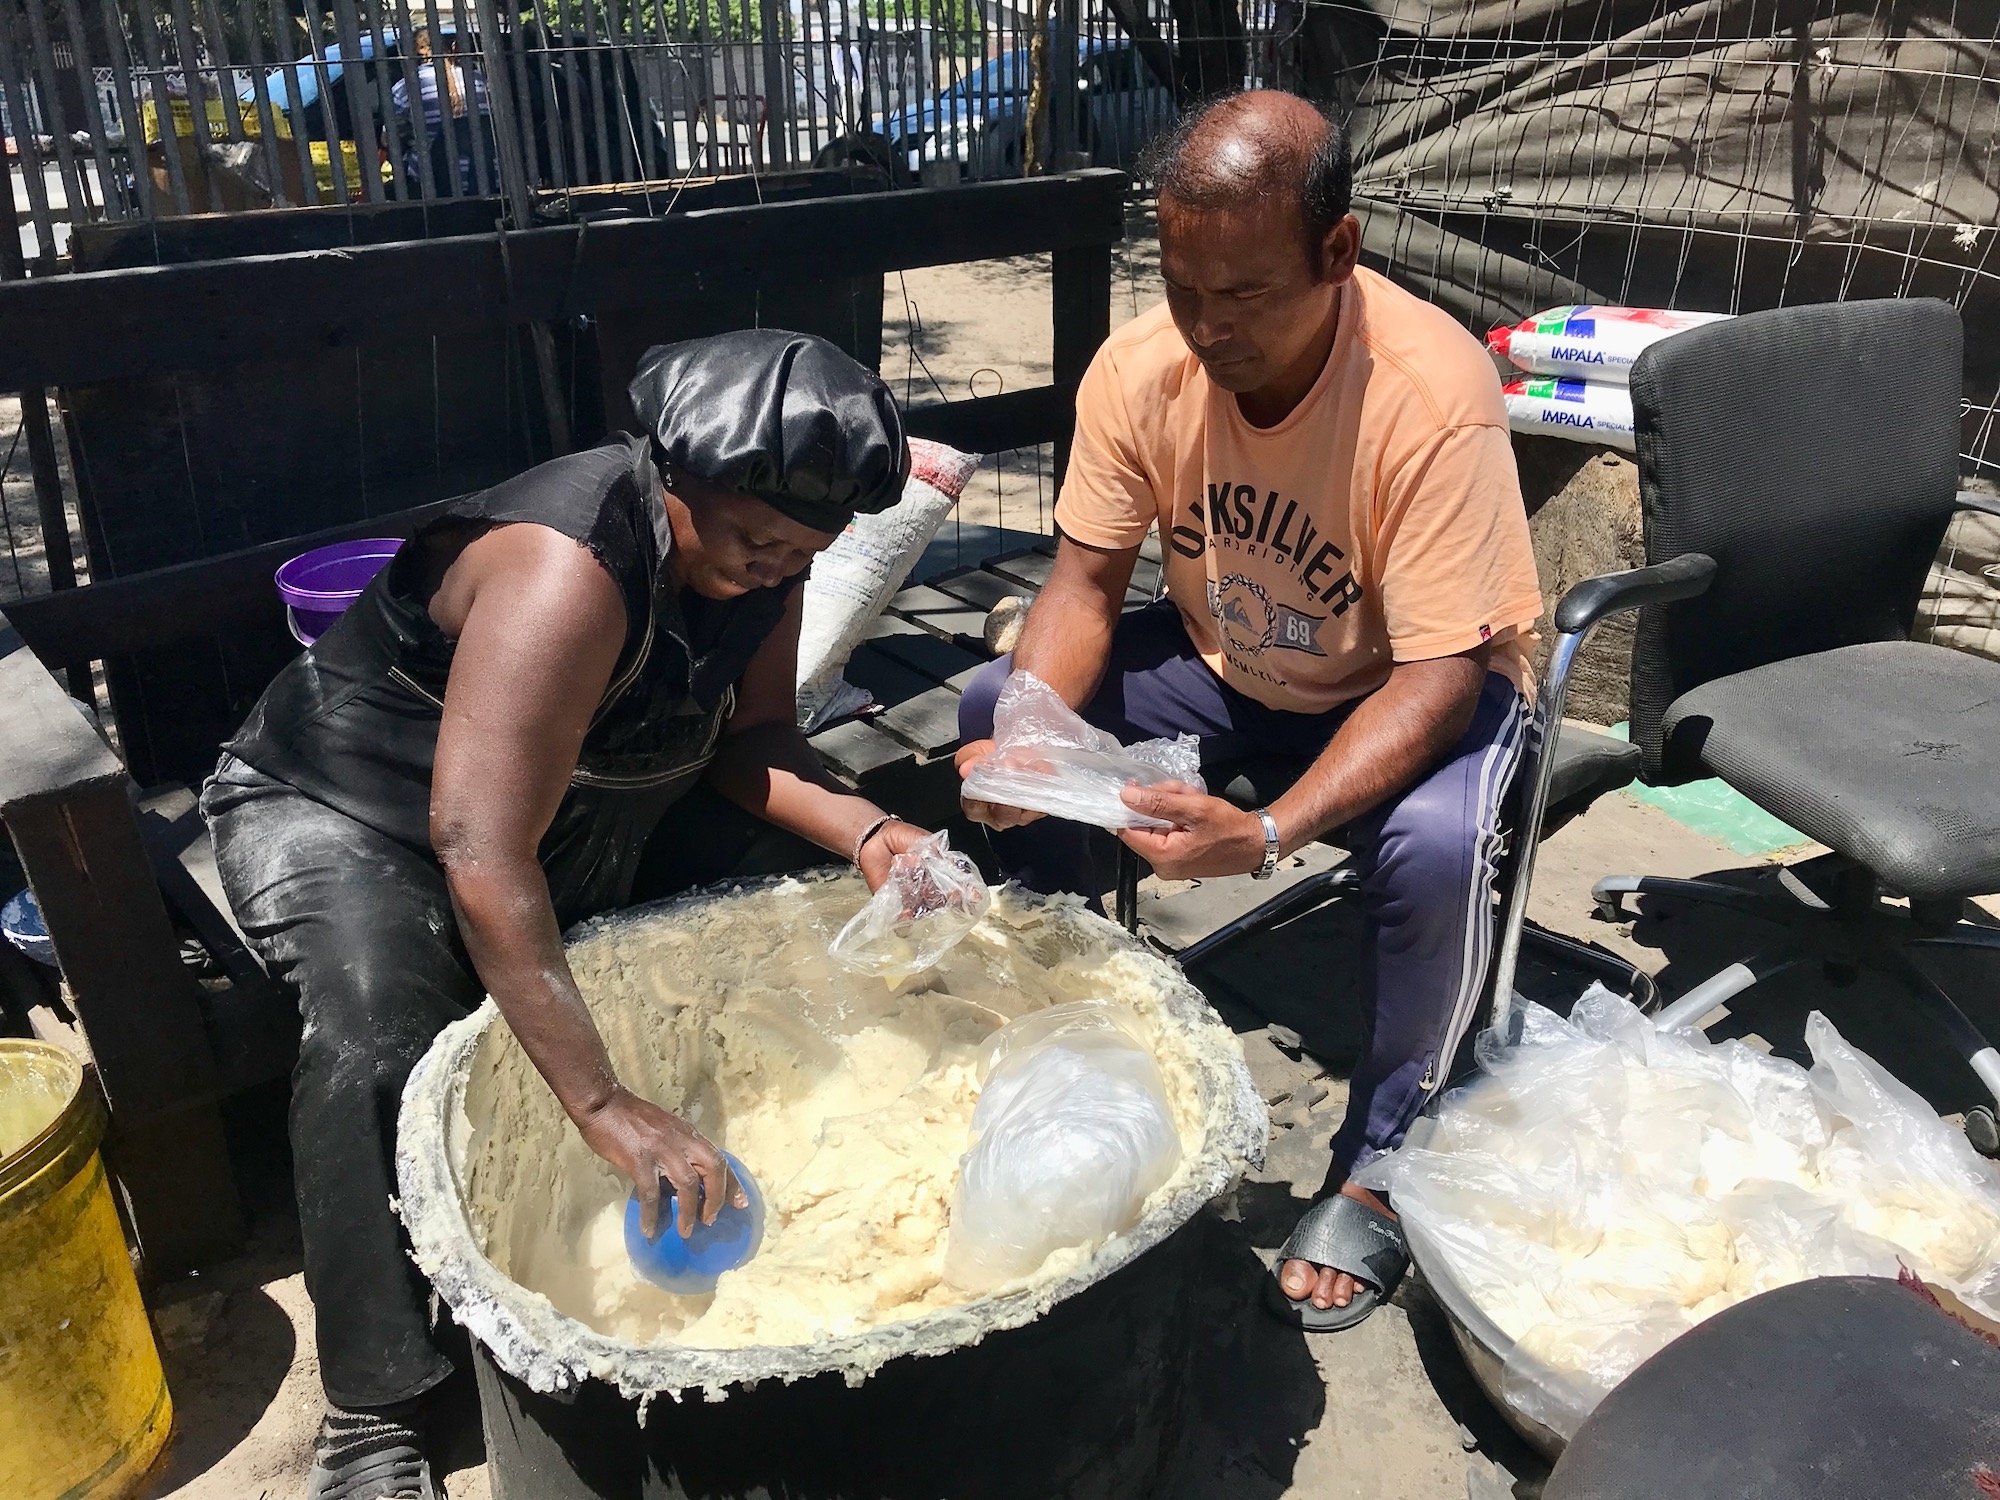 Refugees take turns making food.